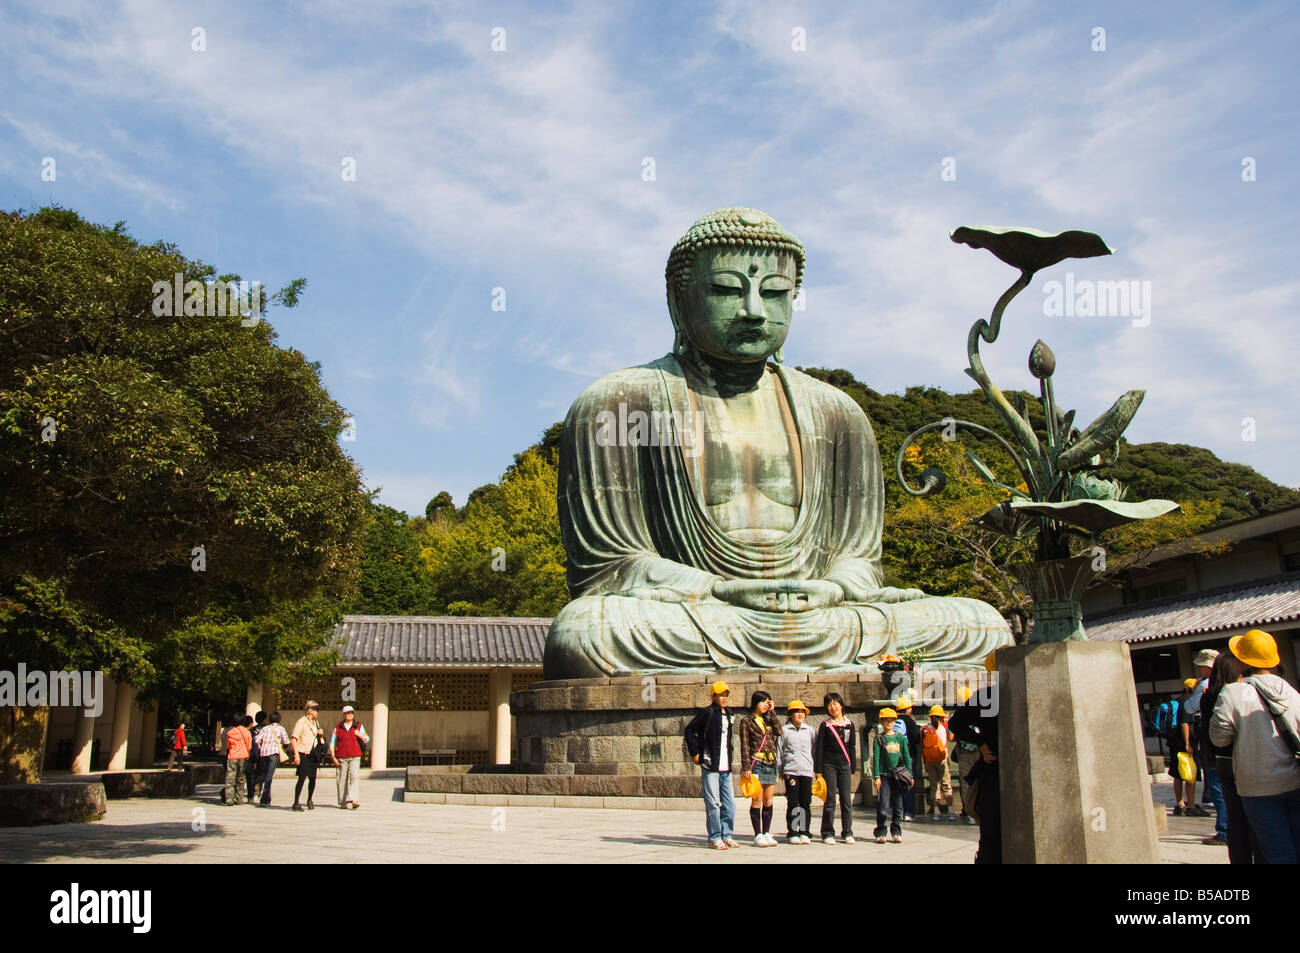 Big Buddha Daibutsu erbaute 1252 mit einem Gewicht von 121 Tonnen Kamakura City Kanagawa Präfektur Honshu Insel Japan Asien Stockfoto